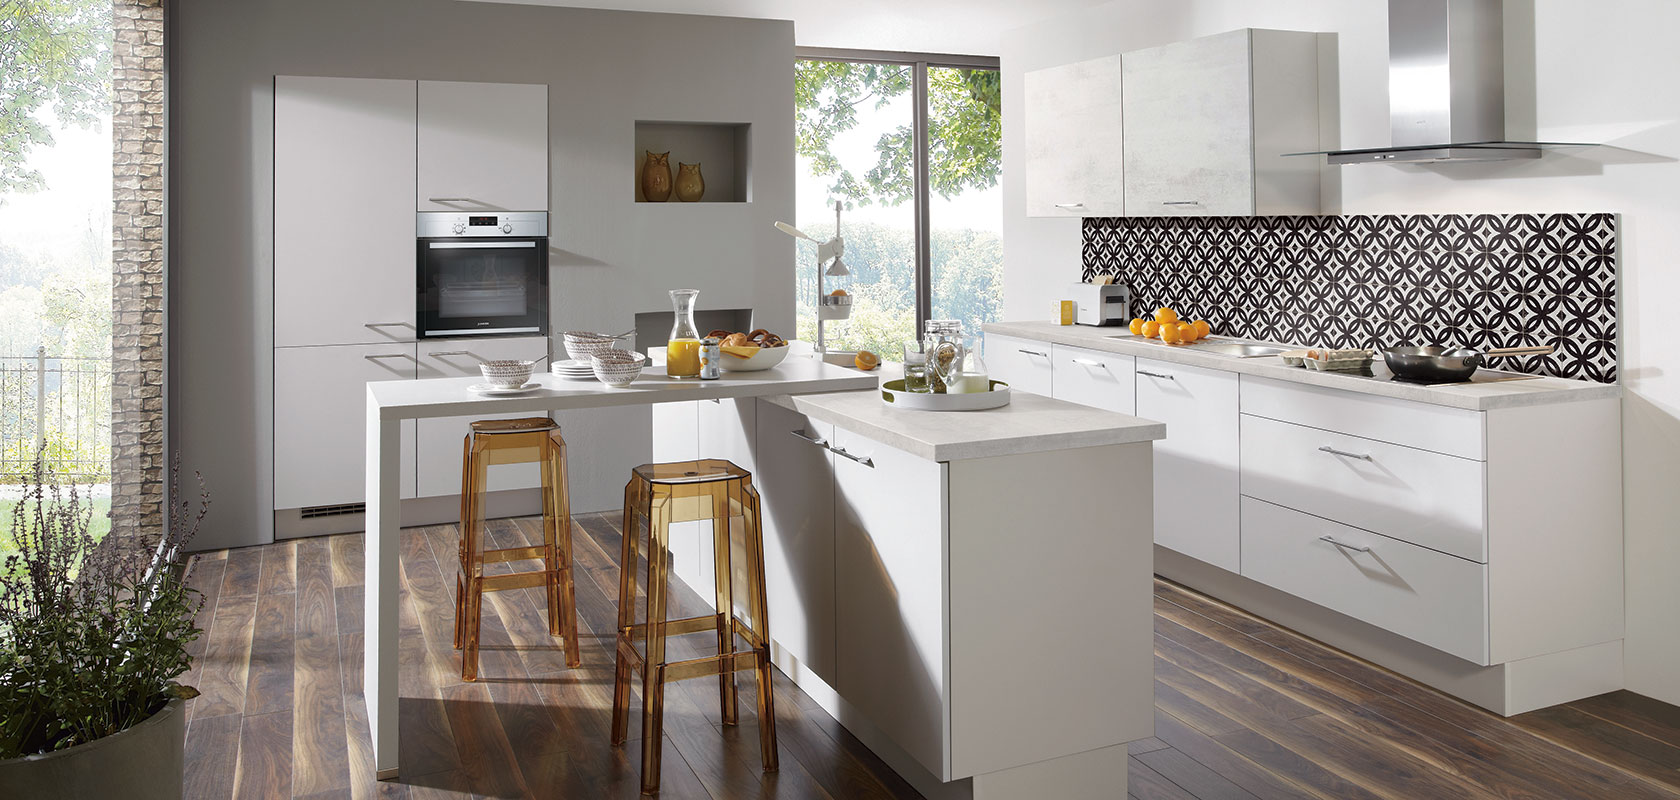 Cocina contemporánea con gabinetes blancos, electrodomésticos de acero inoxidable, salpicadero con patrón y una barra de desayuno con taburetes junto a una ventana grande.